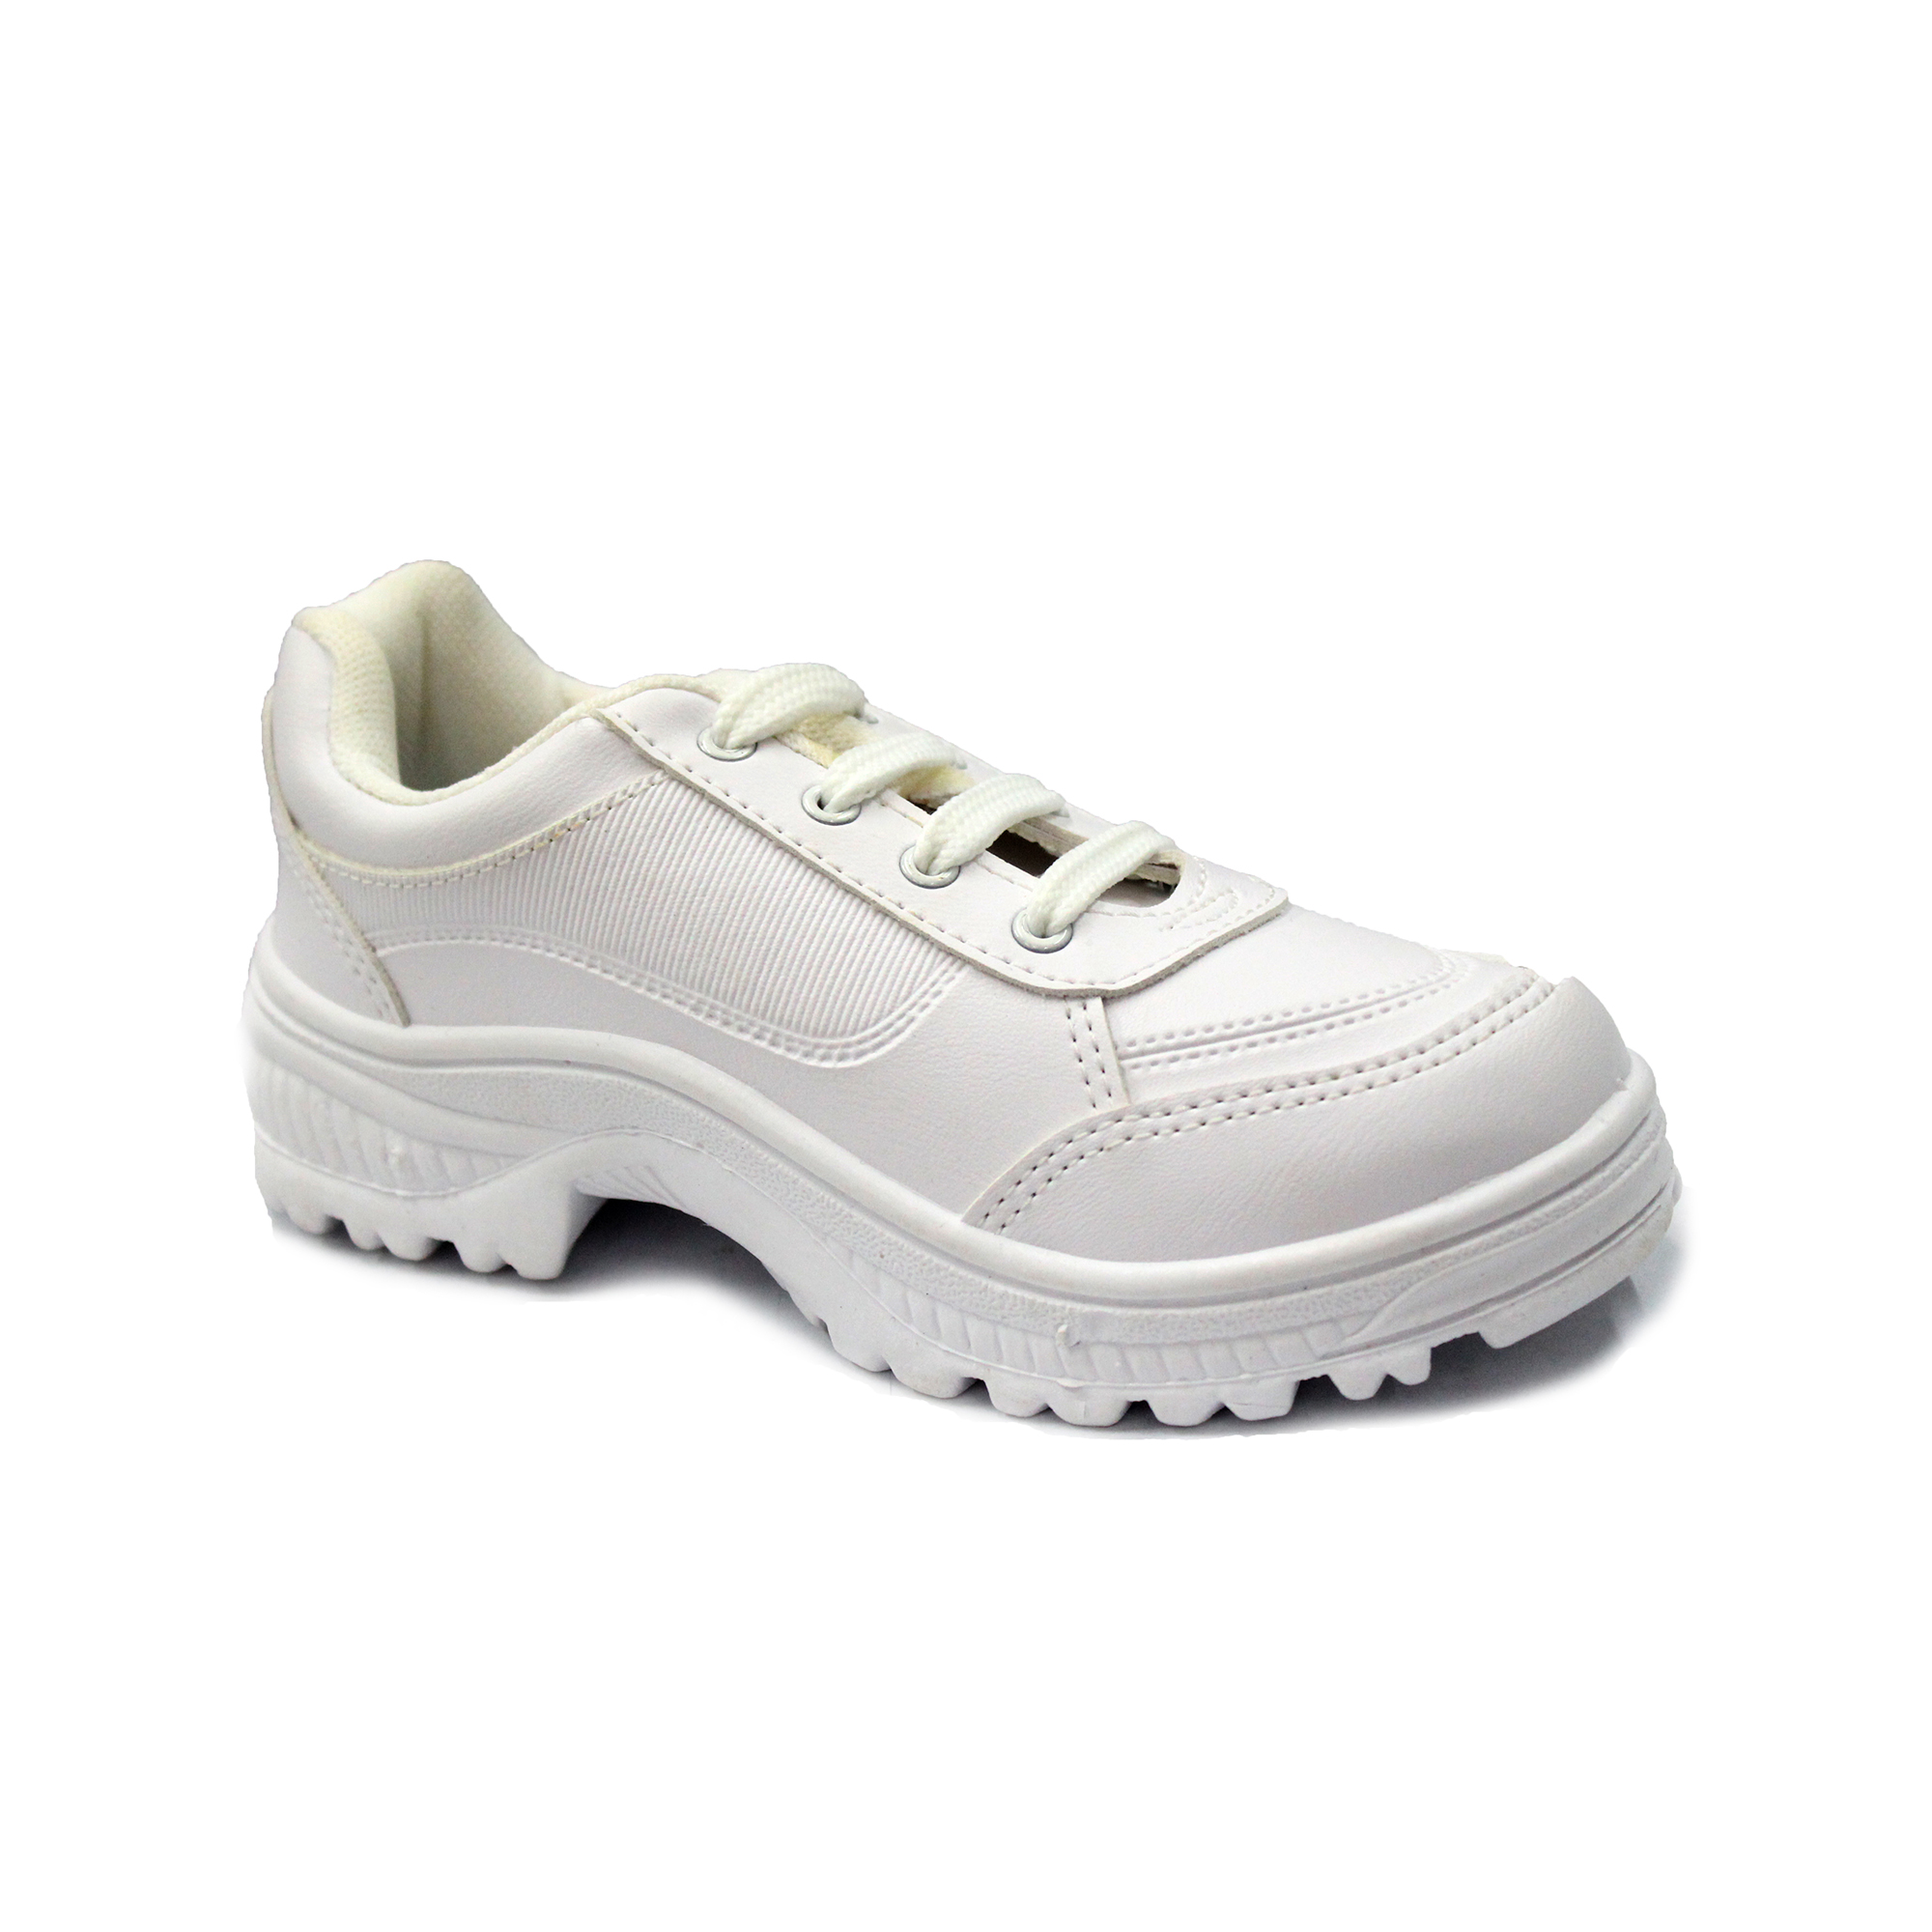 White School Shoes for Girls | bata.lk